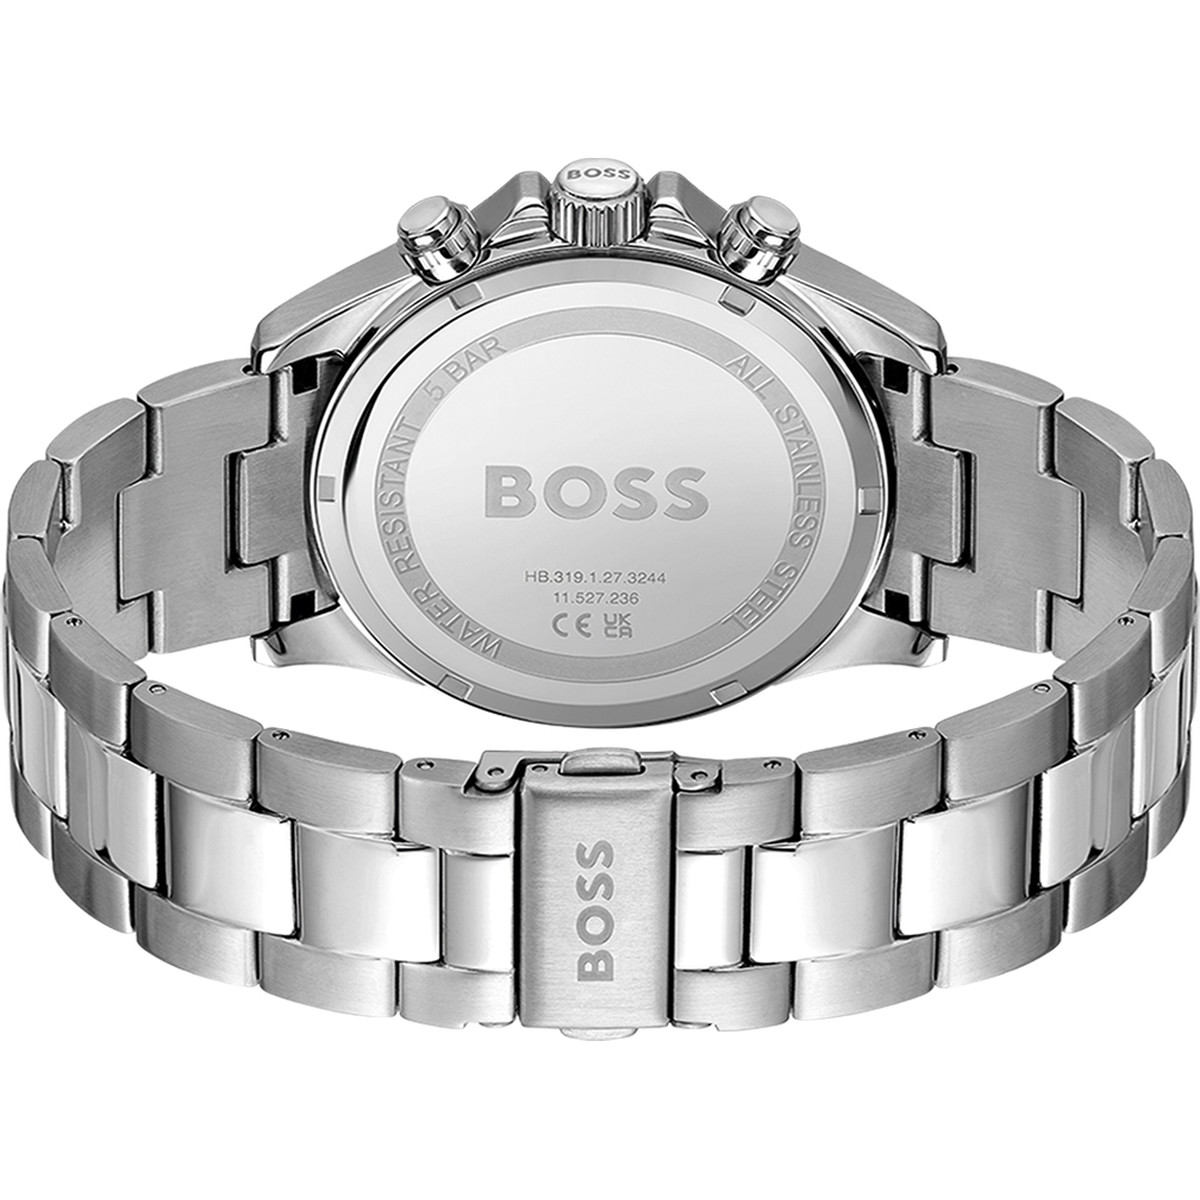 Montre BOSS sport lux homme chronographe bracelet acier inoxydable argent - vue 3